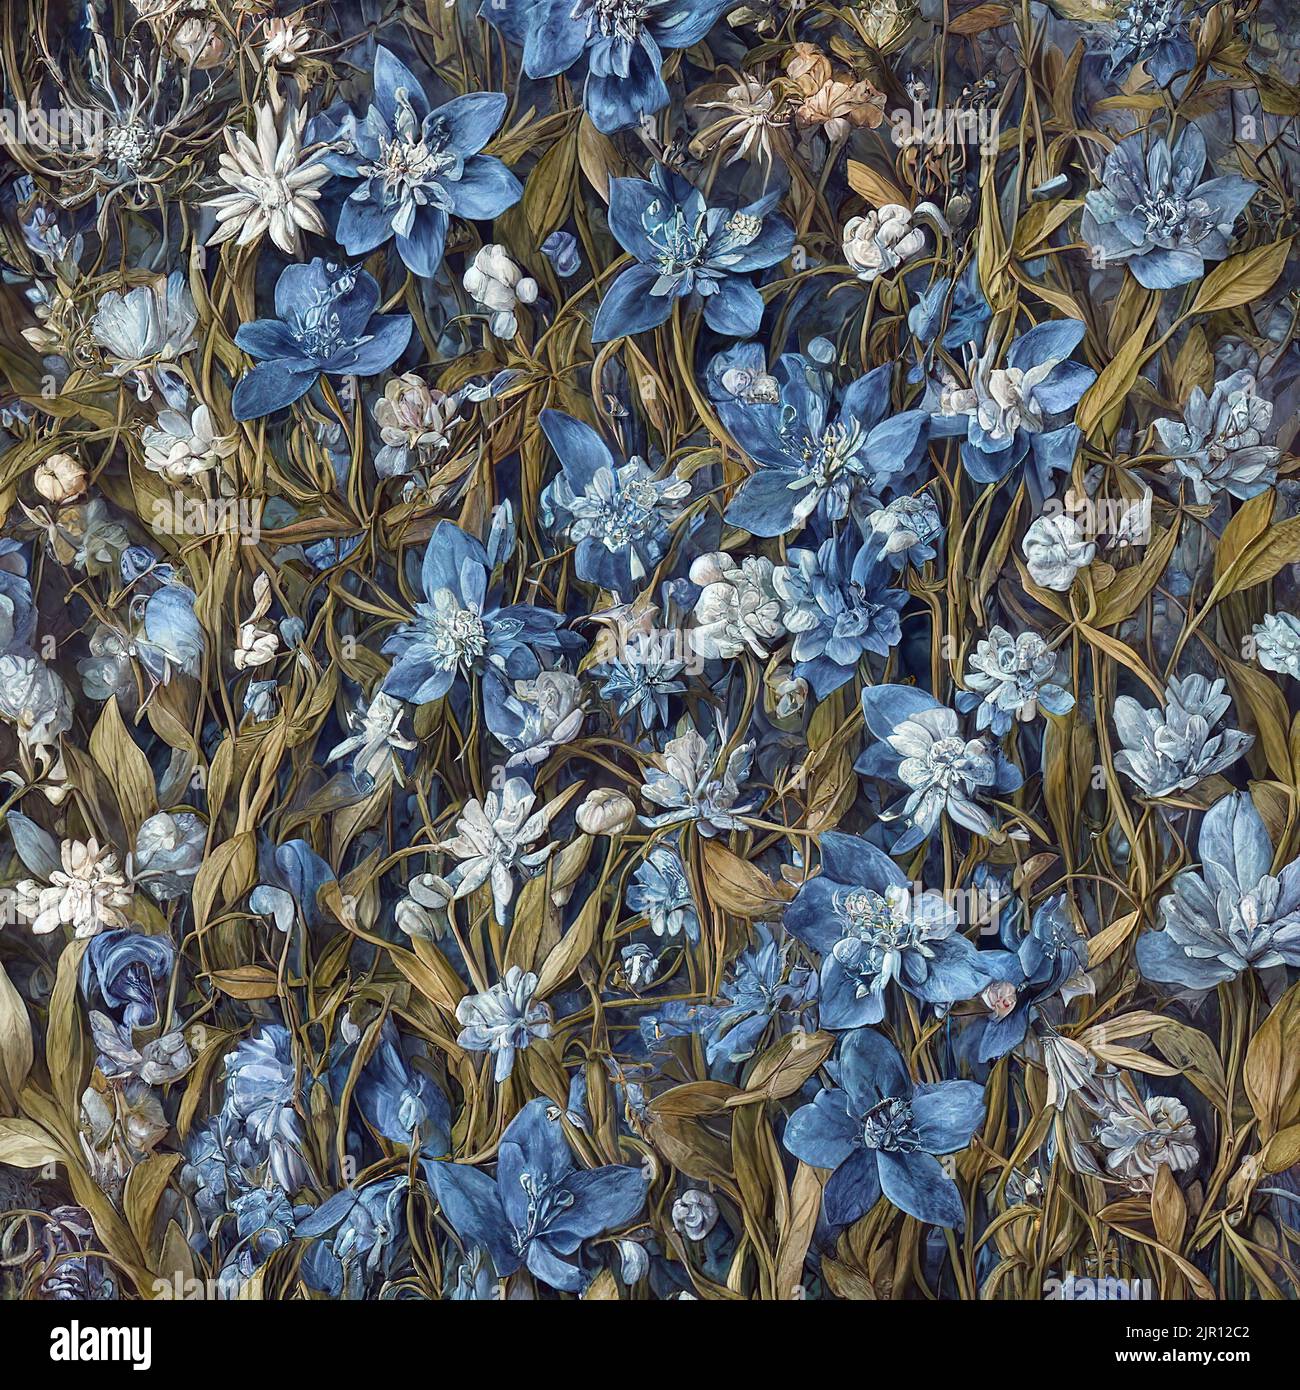 Illustration of beautifull orange and blue wild flower background Stock Photo